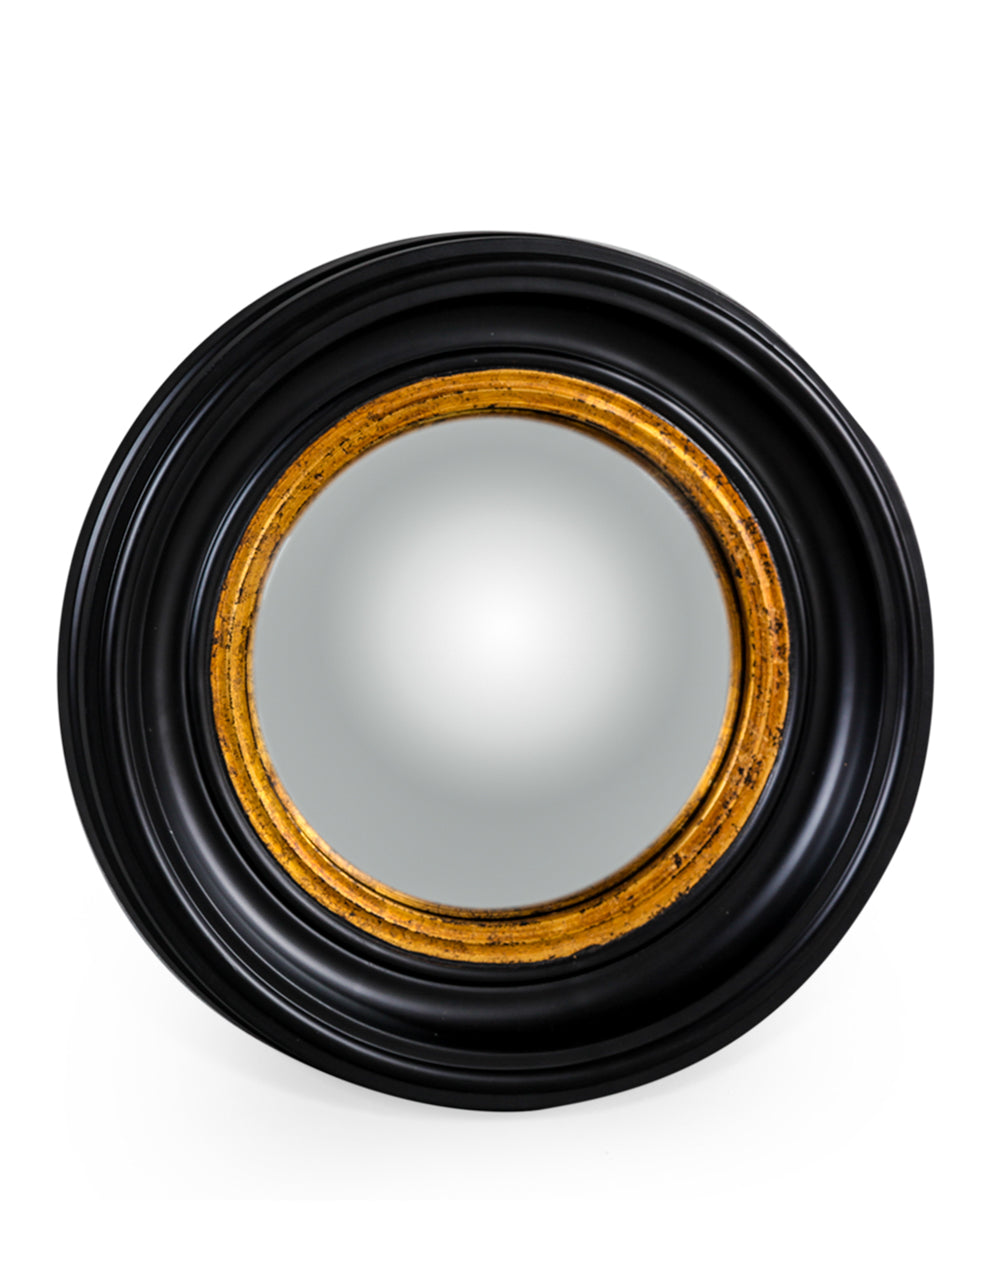 Black & Gold Convex Mirror - Small